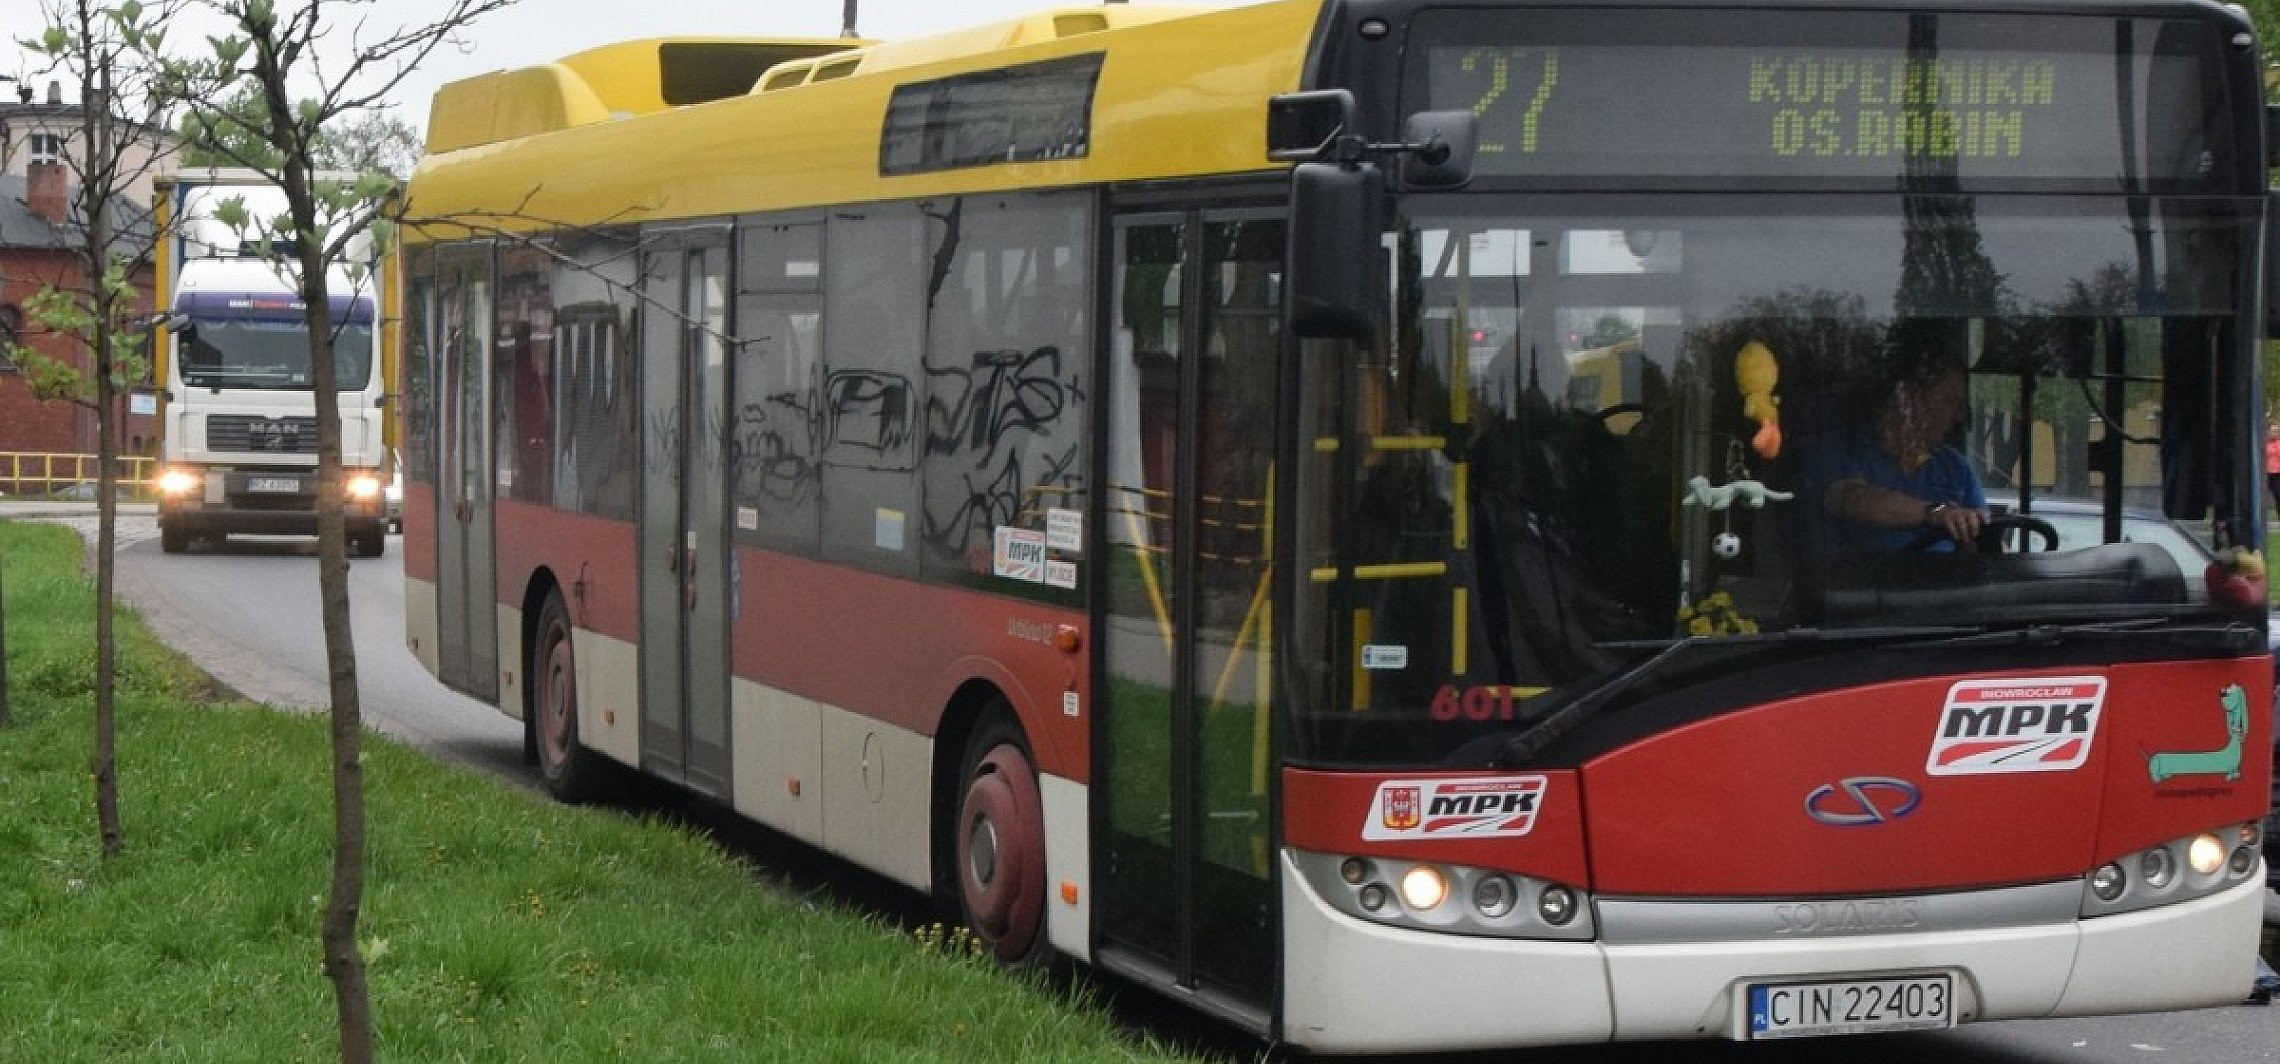 Inowrocław - Autobusy MPK pojadą jak w ferie